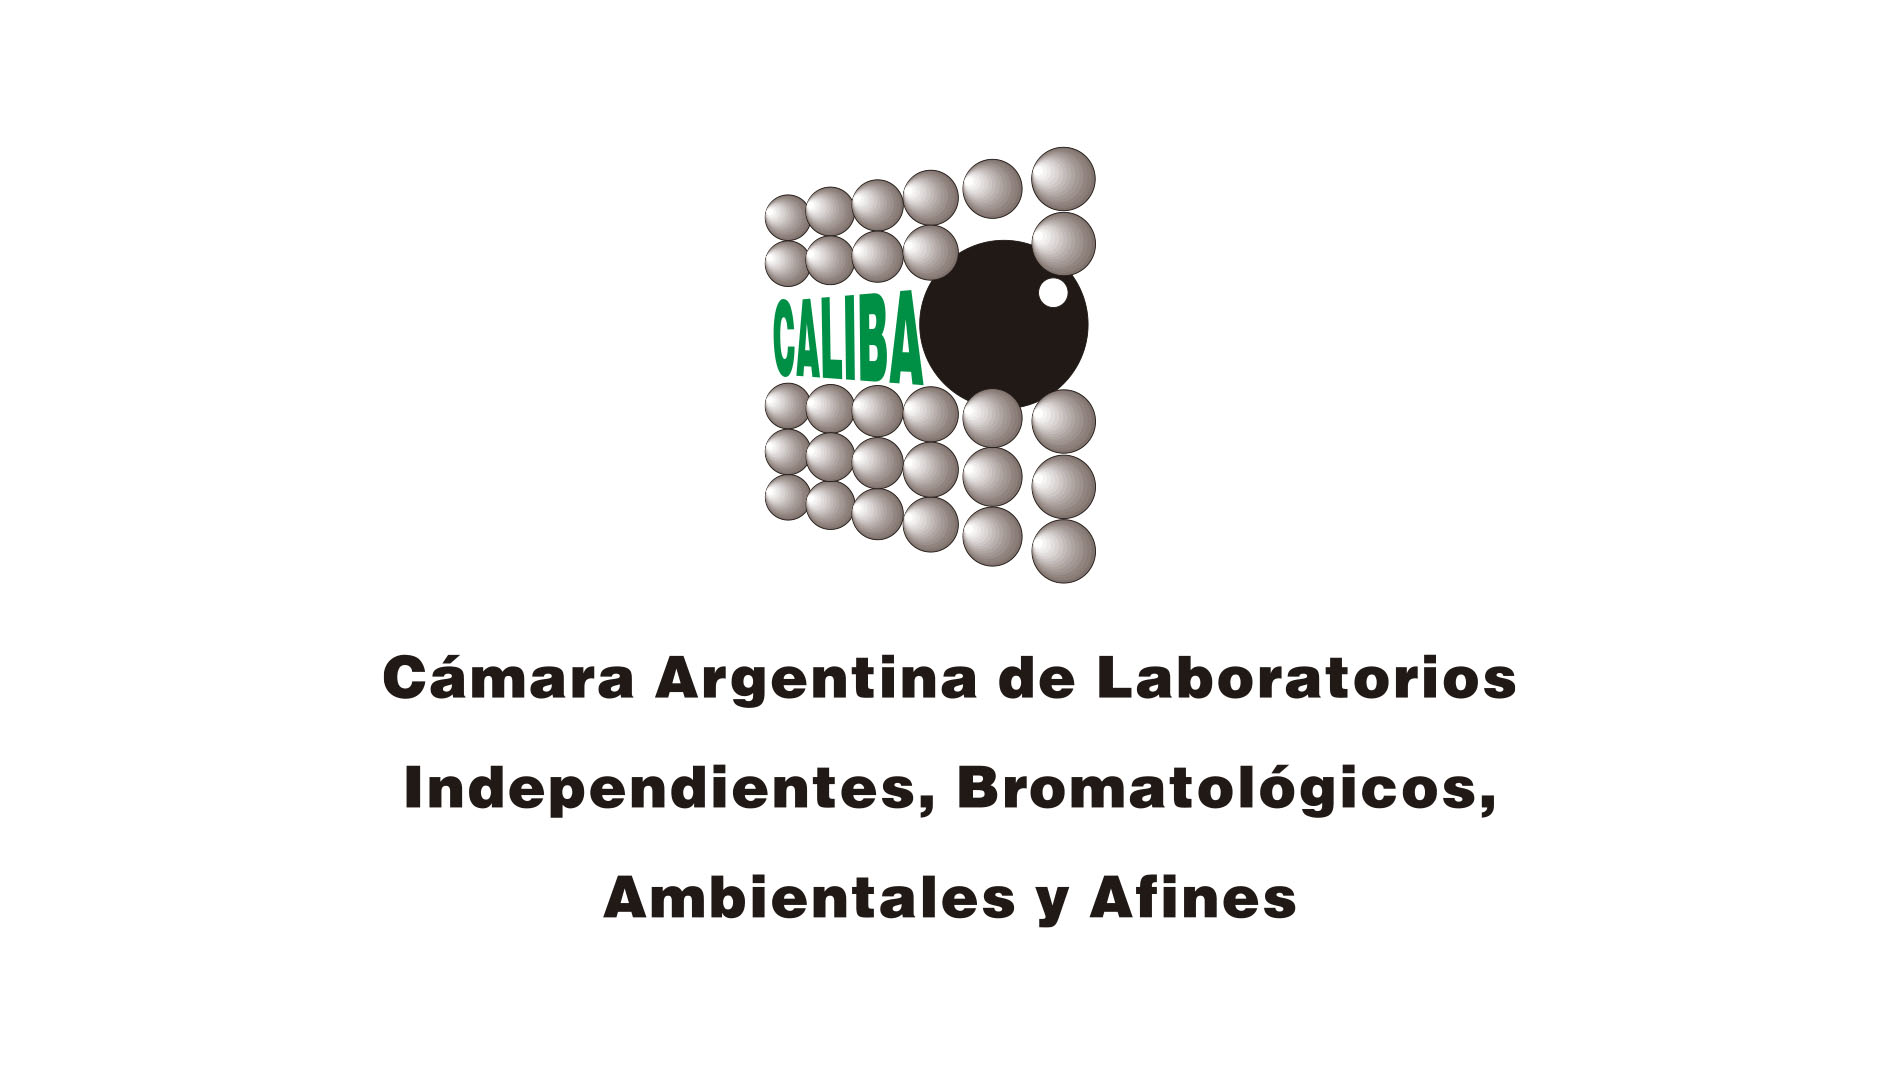 Cámara argentina de Laboratorios independientes, Bromatológicos, Ambientales y afines